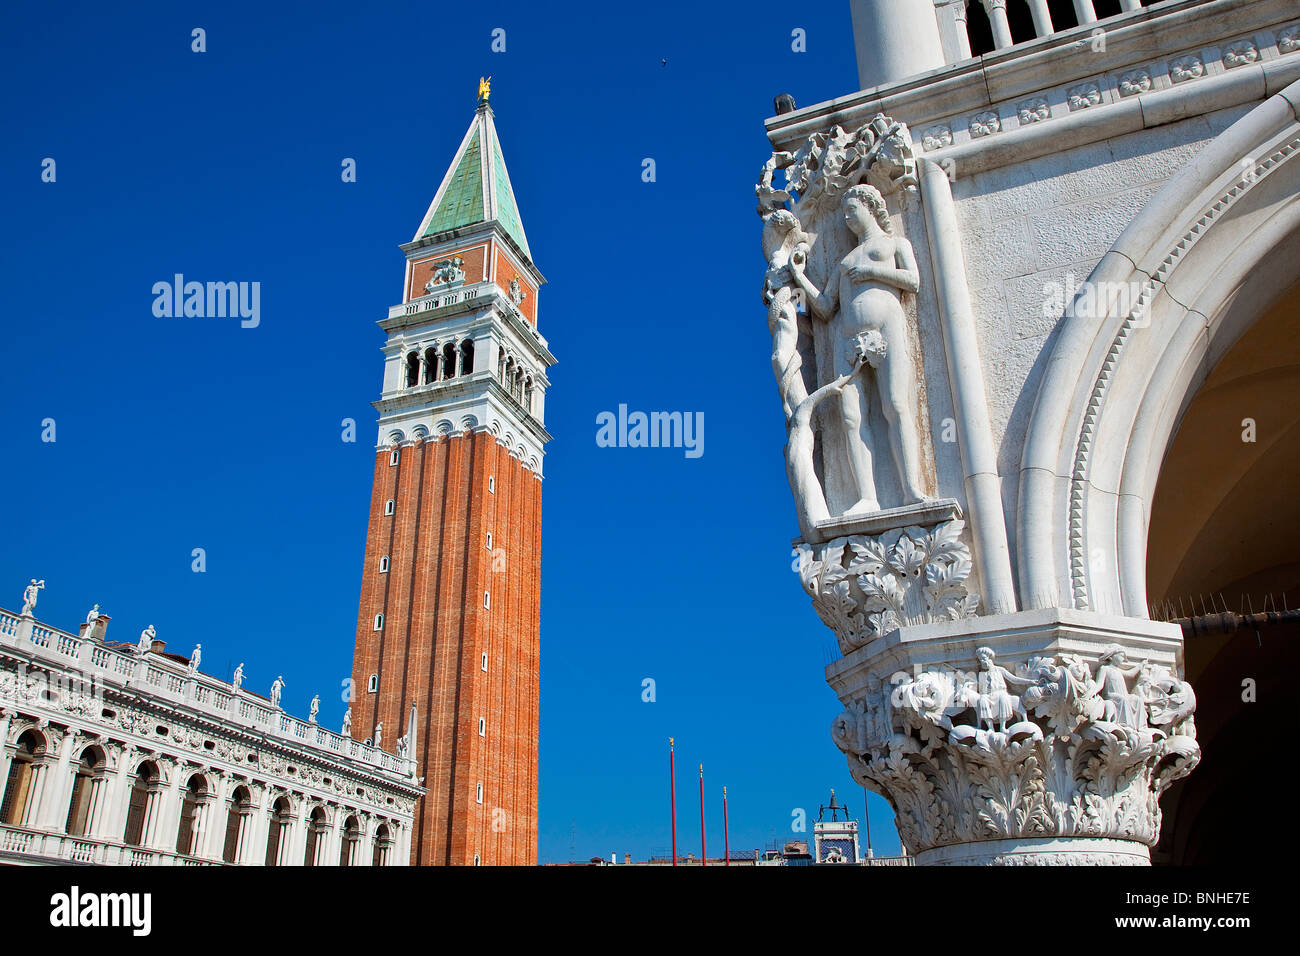 Europa, Italien, Venezia, Venedig, aufgeführt als Weltkulturerbe der UNESCO, Piazza San Marco, Campanile Stockfoto